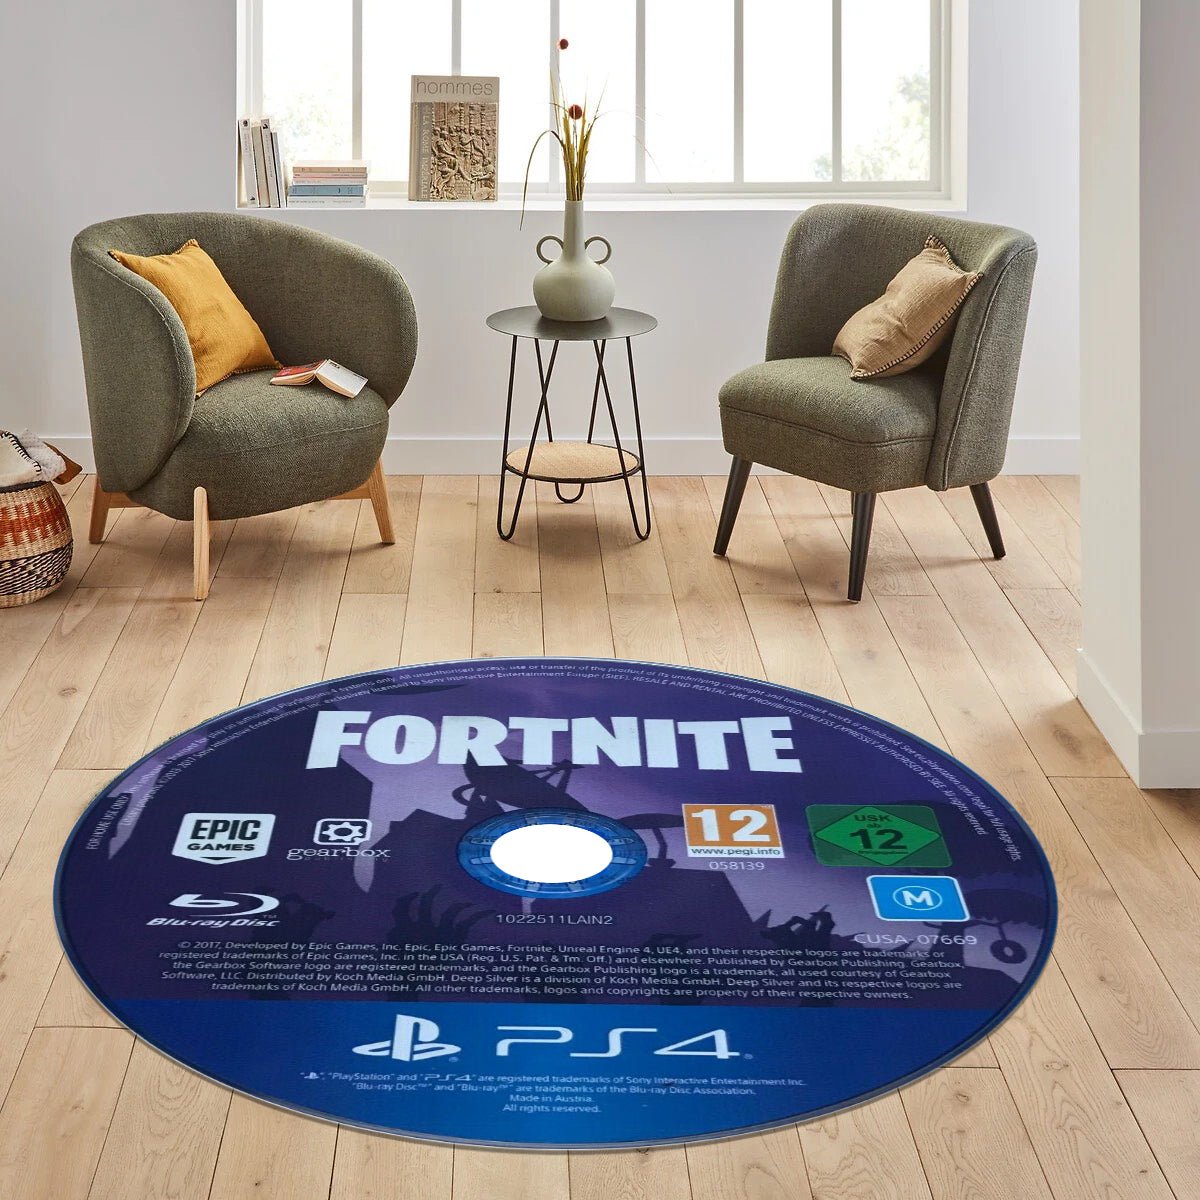 Fortnite Circular/Round CD Rug/Carpet/Mat